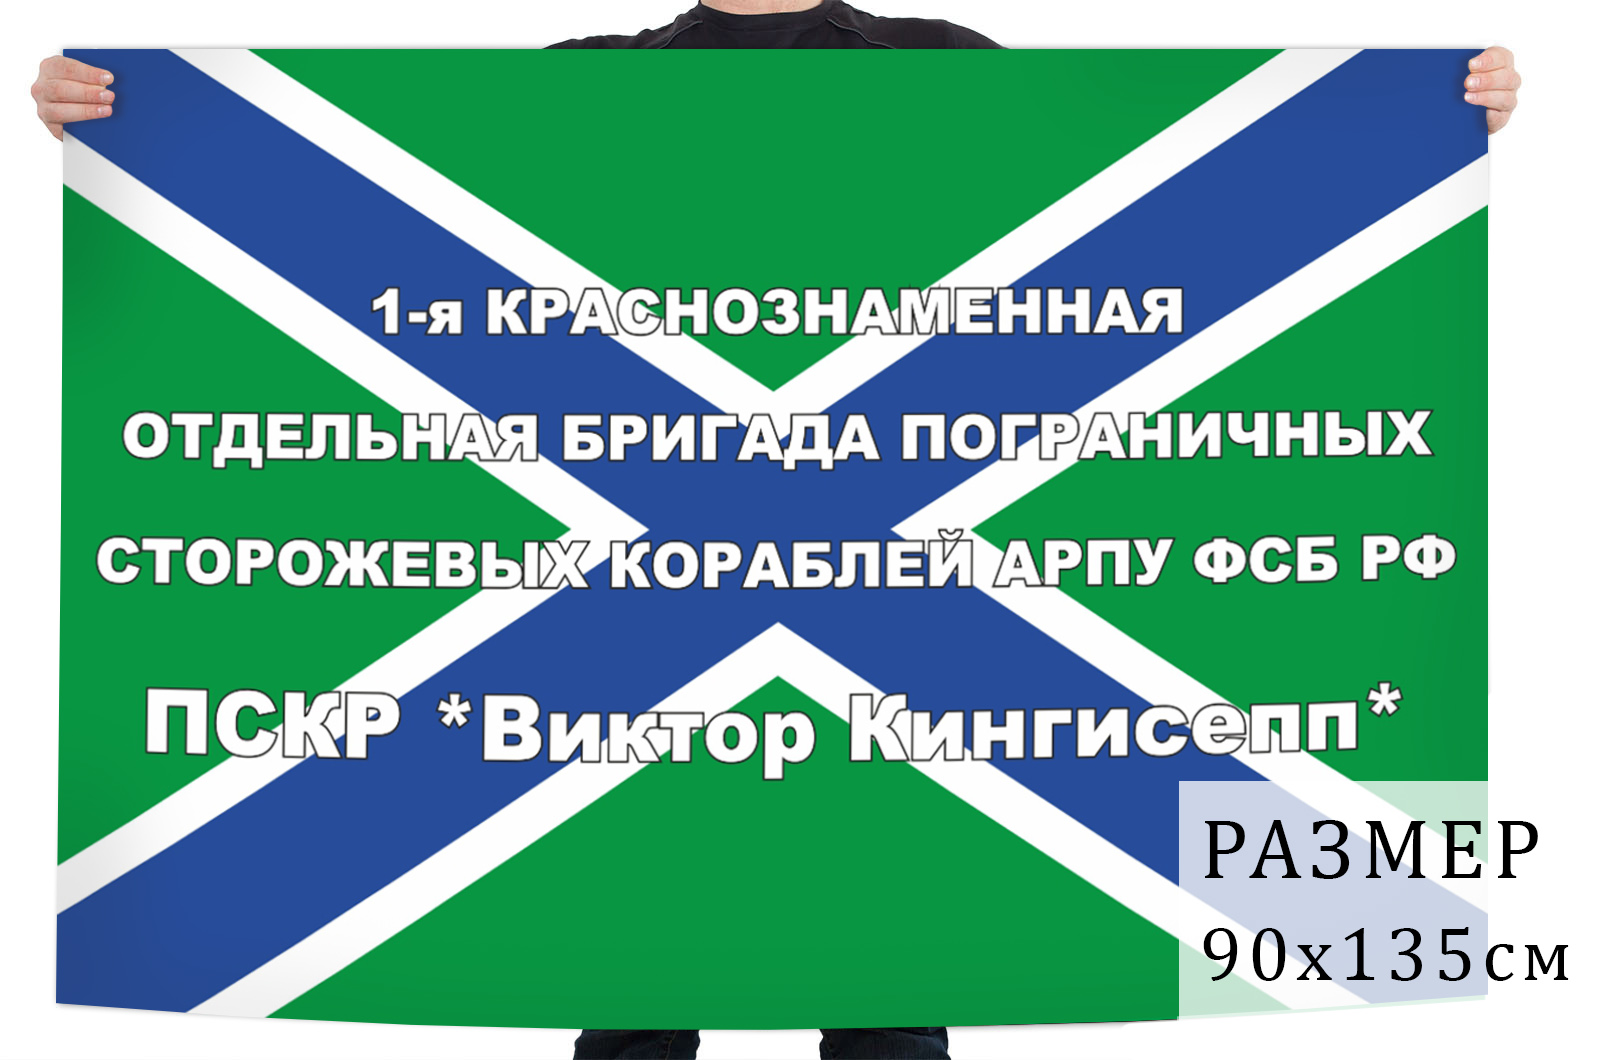 Купить в интернет магазине флаг 1-ой краснознаменной отдельной бригады пограничных сторожевых кораблей АРПУ ФСБ РФ